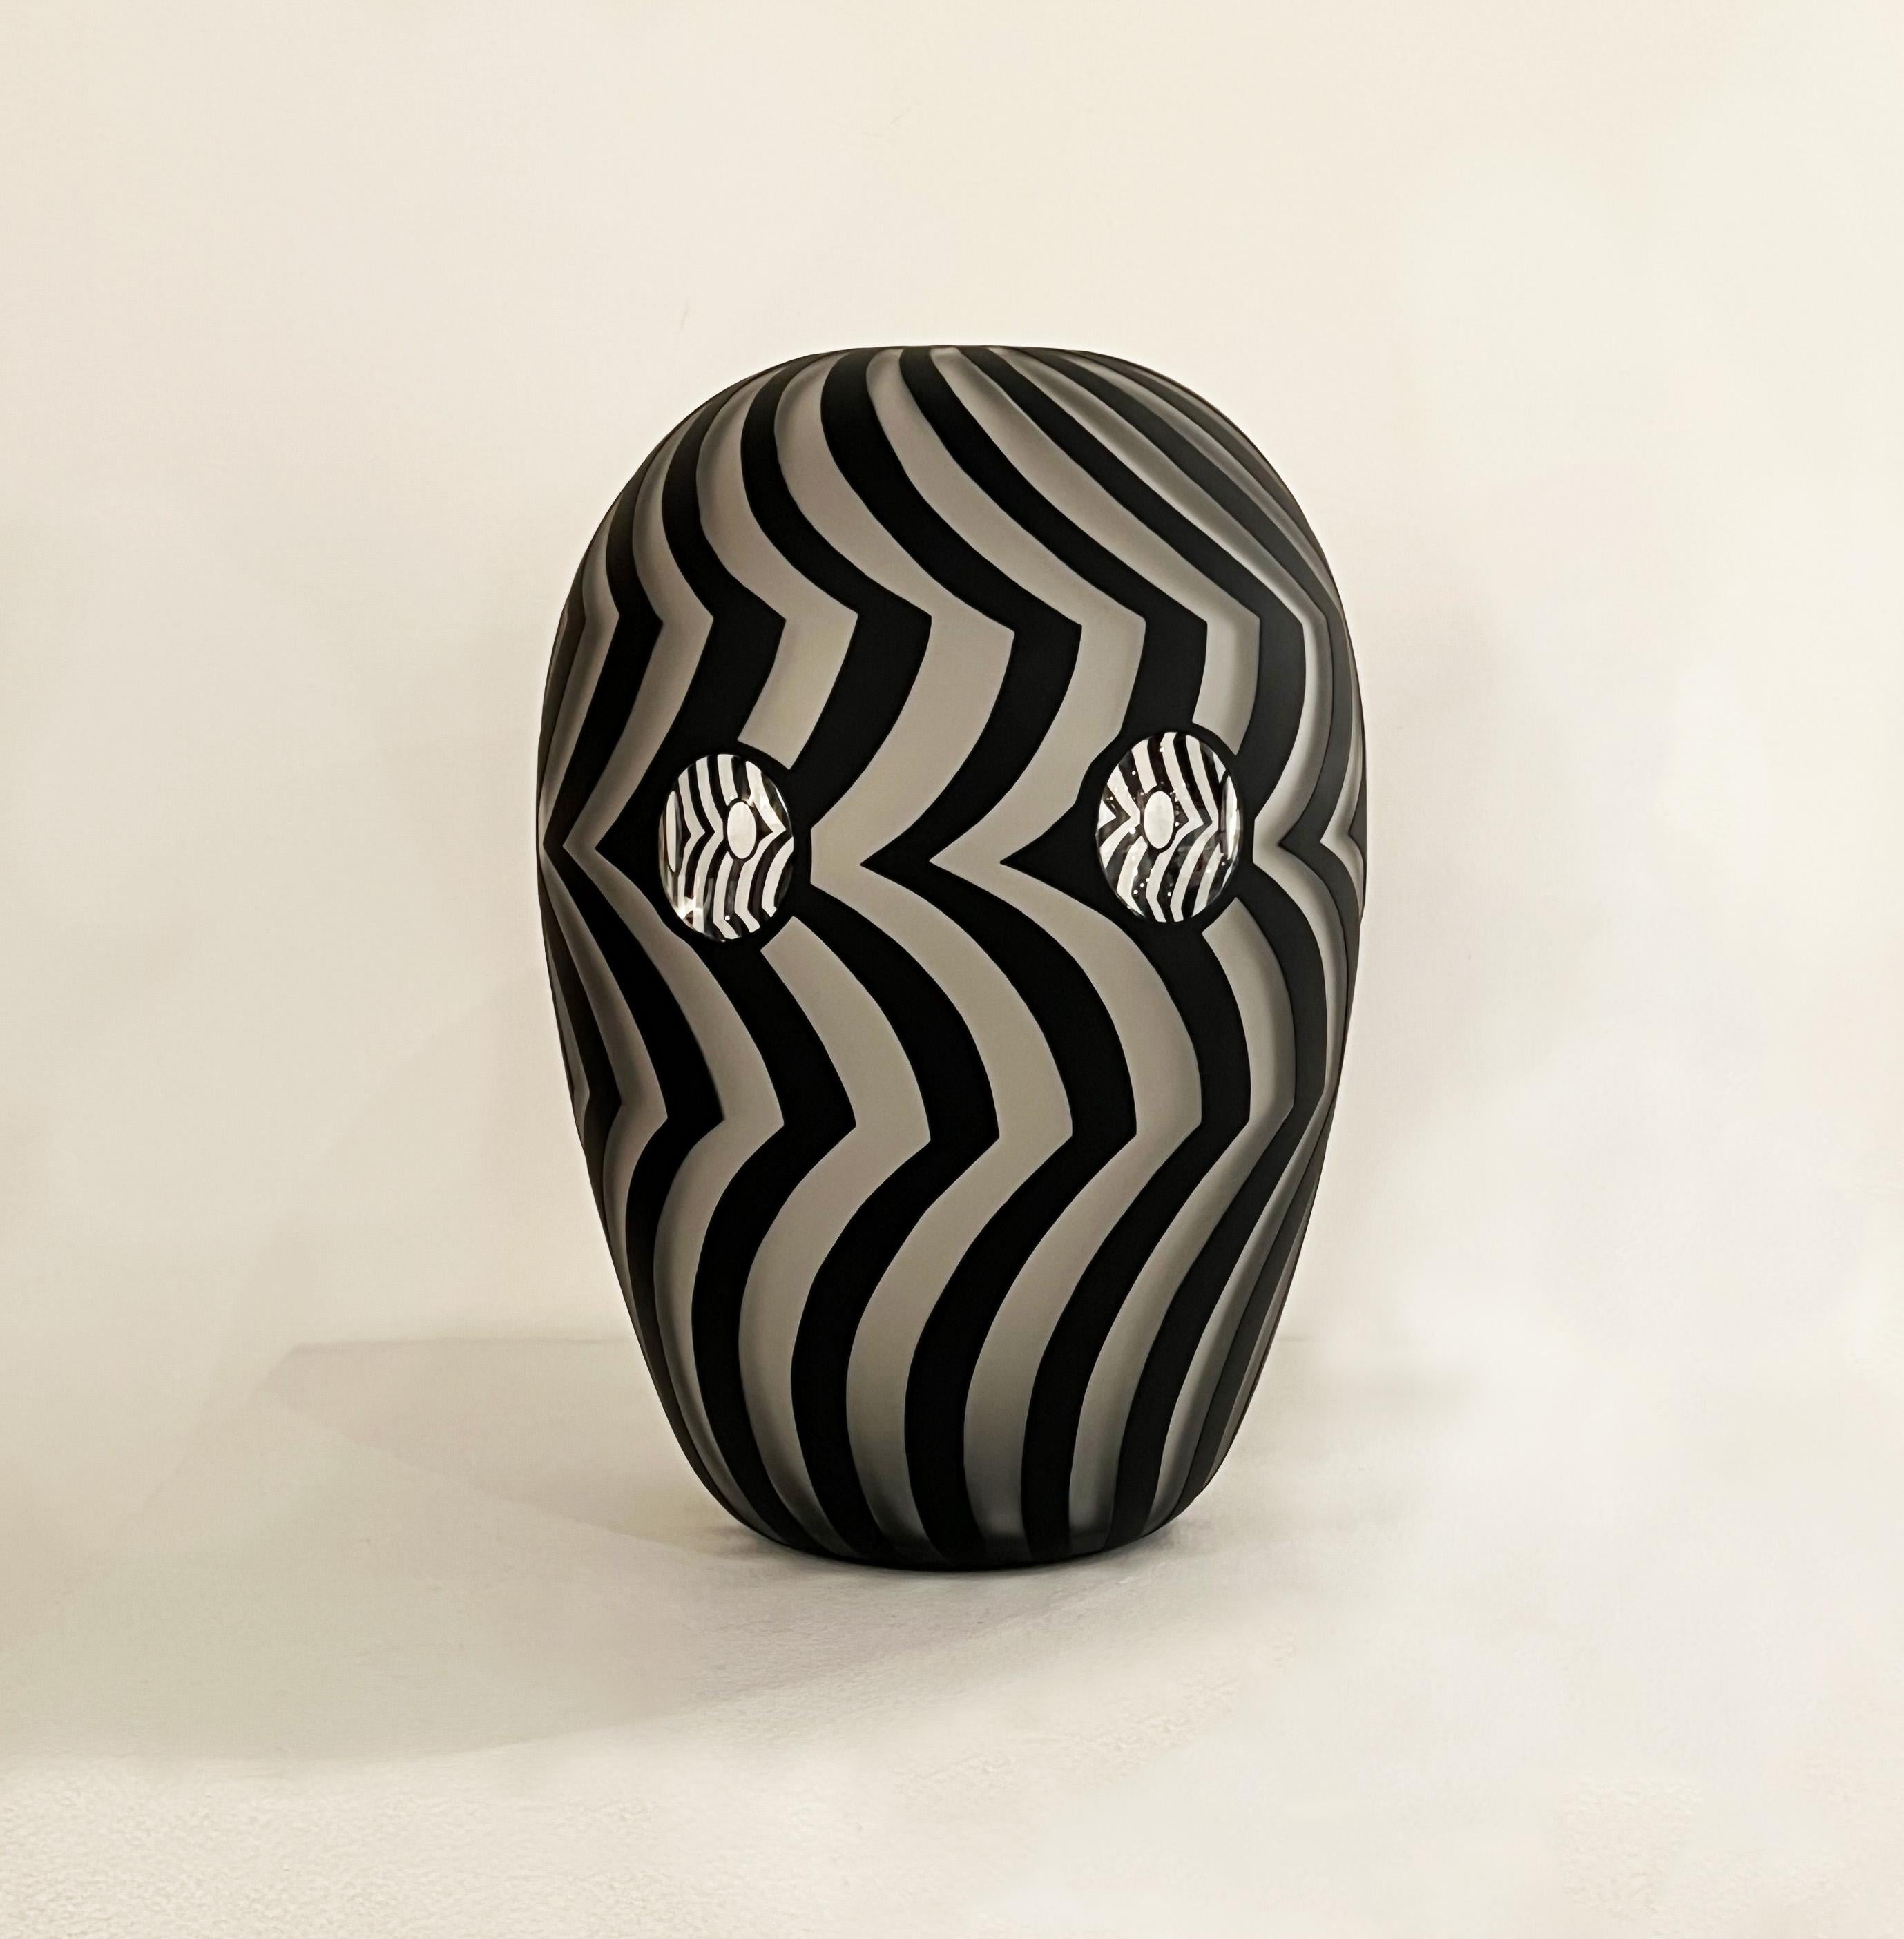 Jared Last Abstract Sculpture – Oculus Serie eiförmige 6 Objektive